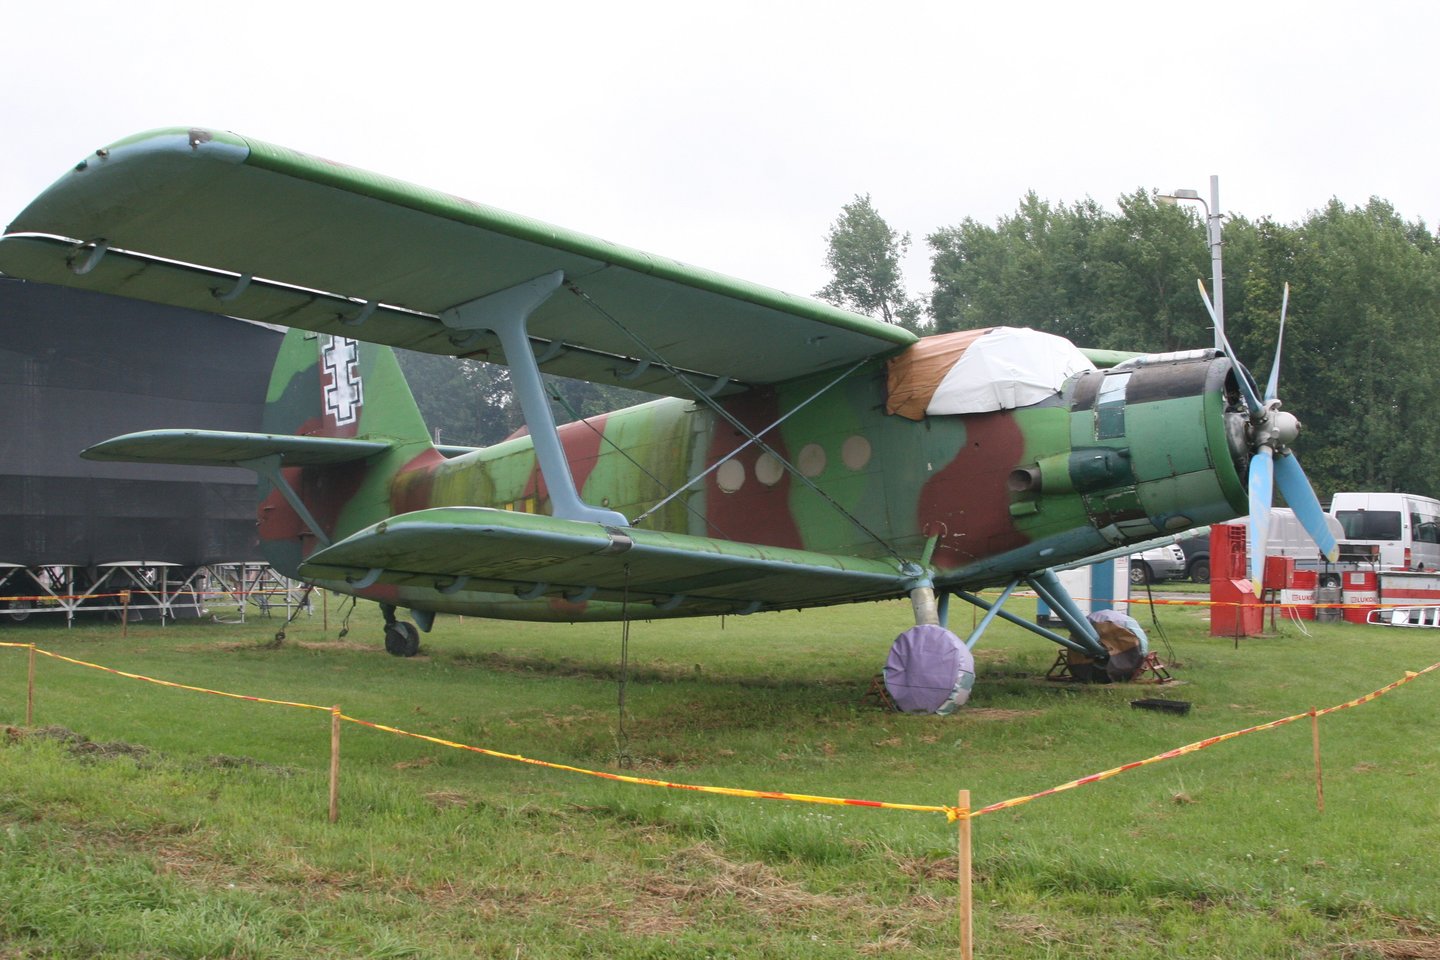  Marijampoliečiai aviacijos šventėje susipažino su legendinio lėktuvo „Lituanica“ sese „Bellanca“.<br> L.Juodzevičienės nuotr.